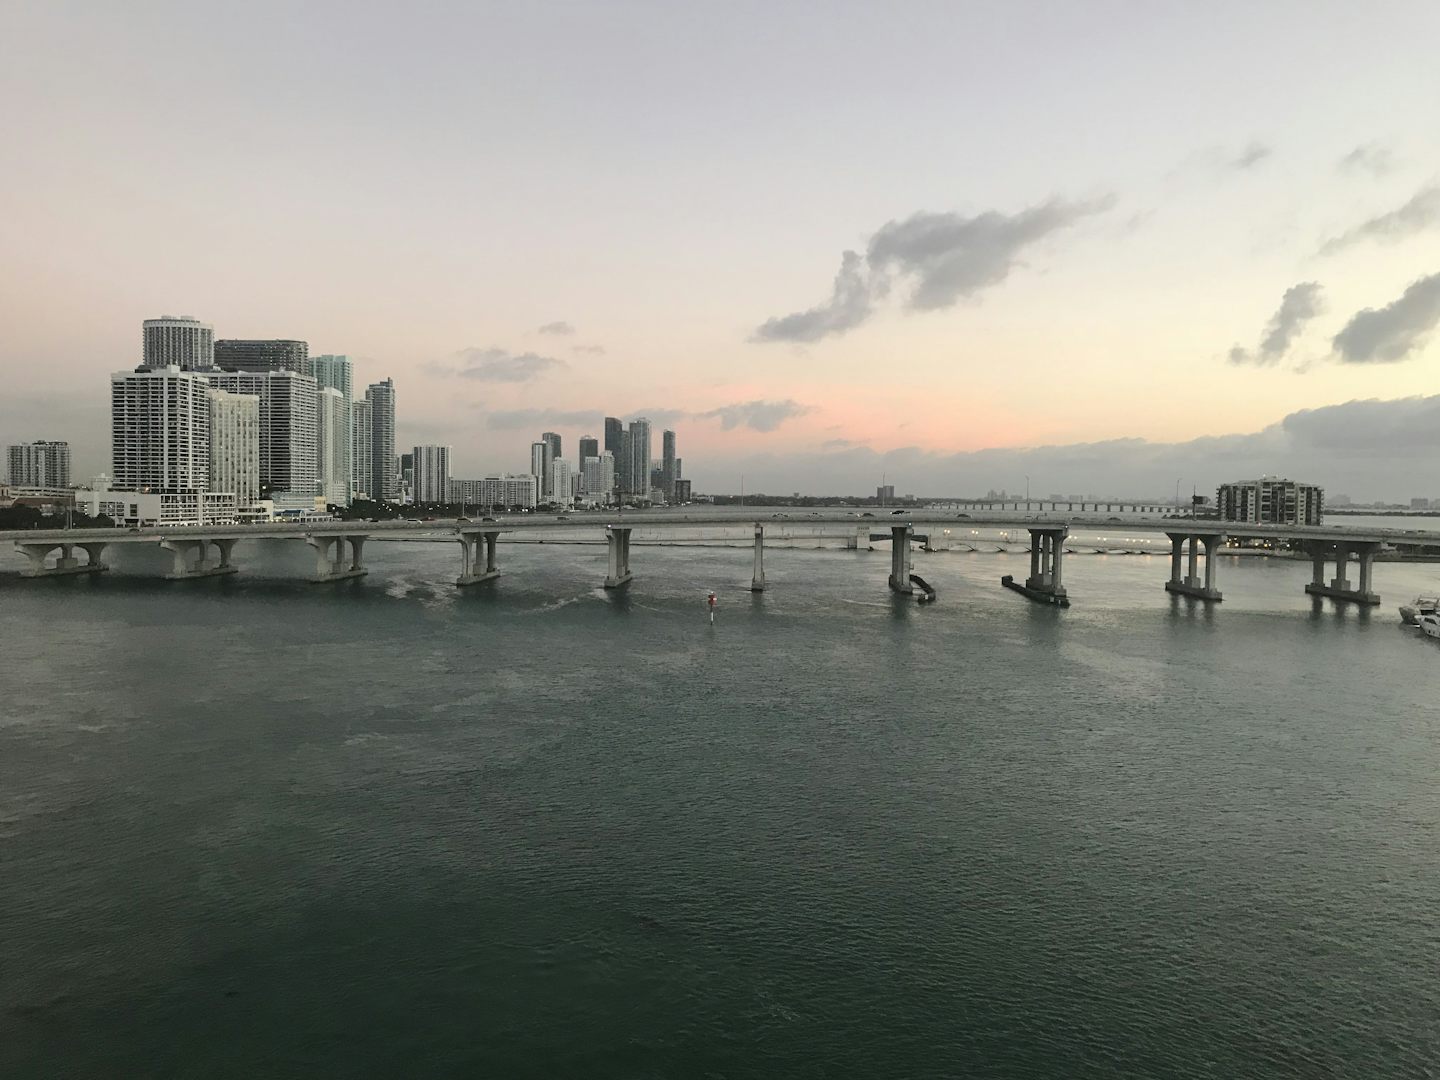 Bridge in Miami